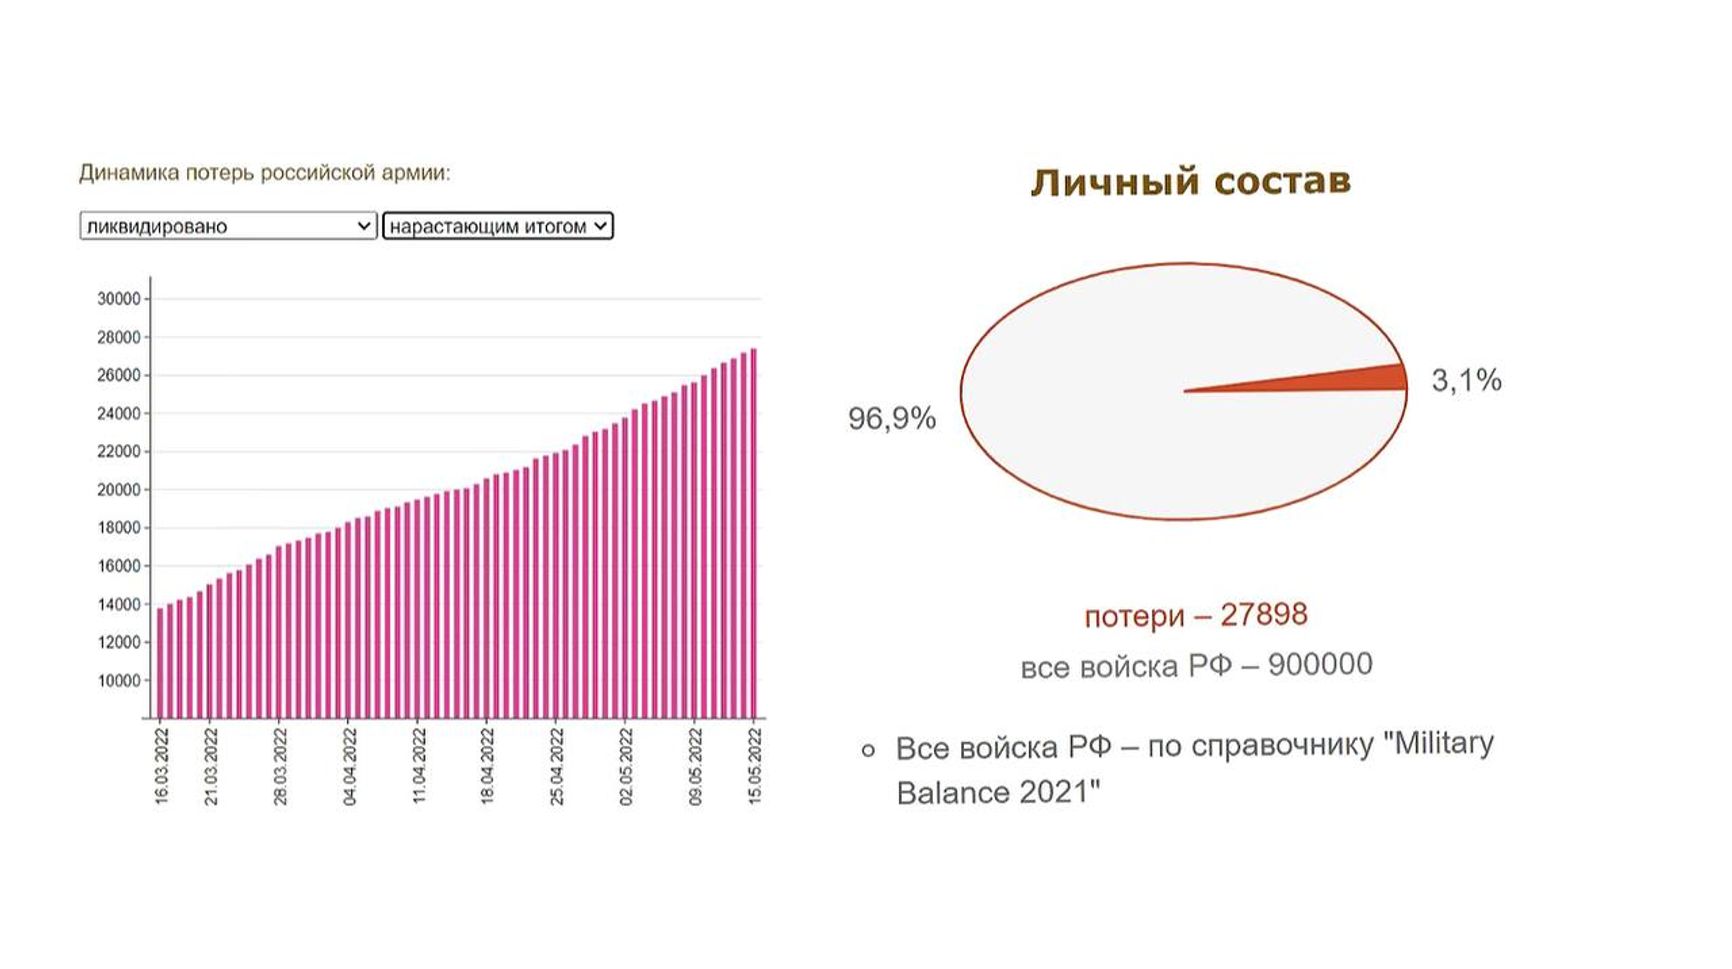 По информации Киева, Россия во время войны в Украине потеряла более 3% личного состава своих ВС, но независимые эксперты считают эти данные завышенными.  Источник - Минфин Украины 